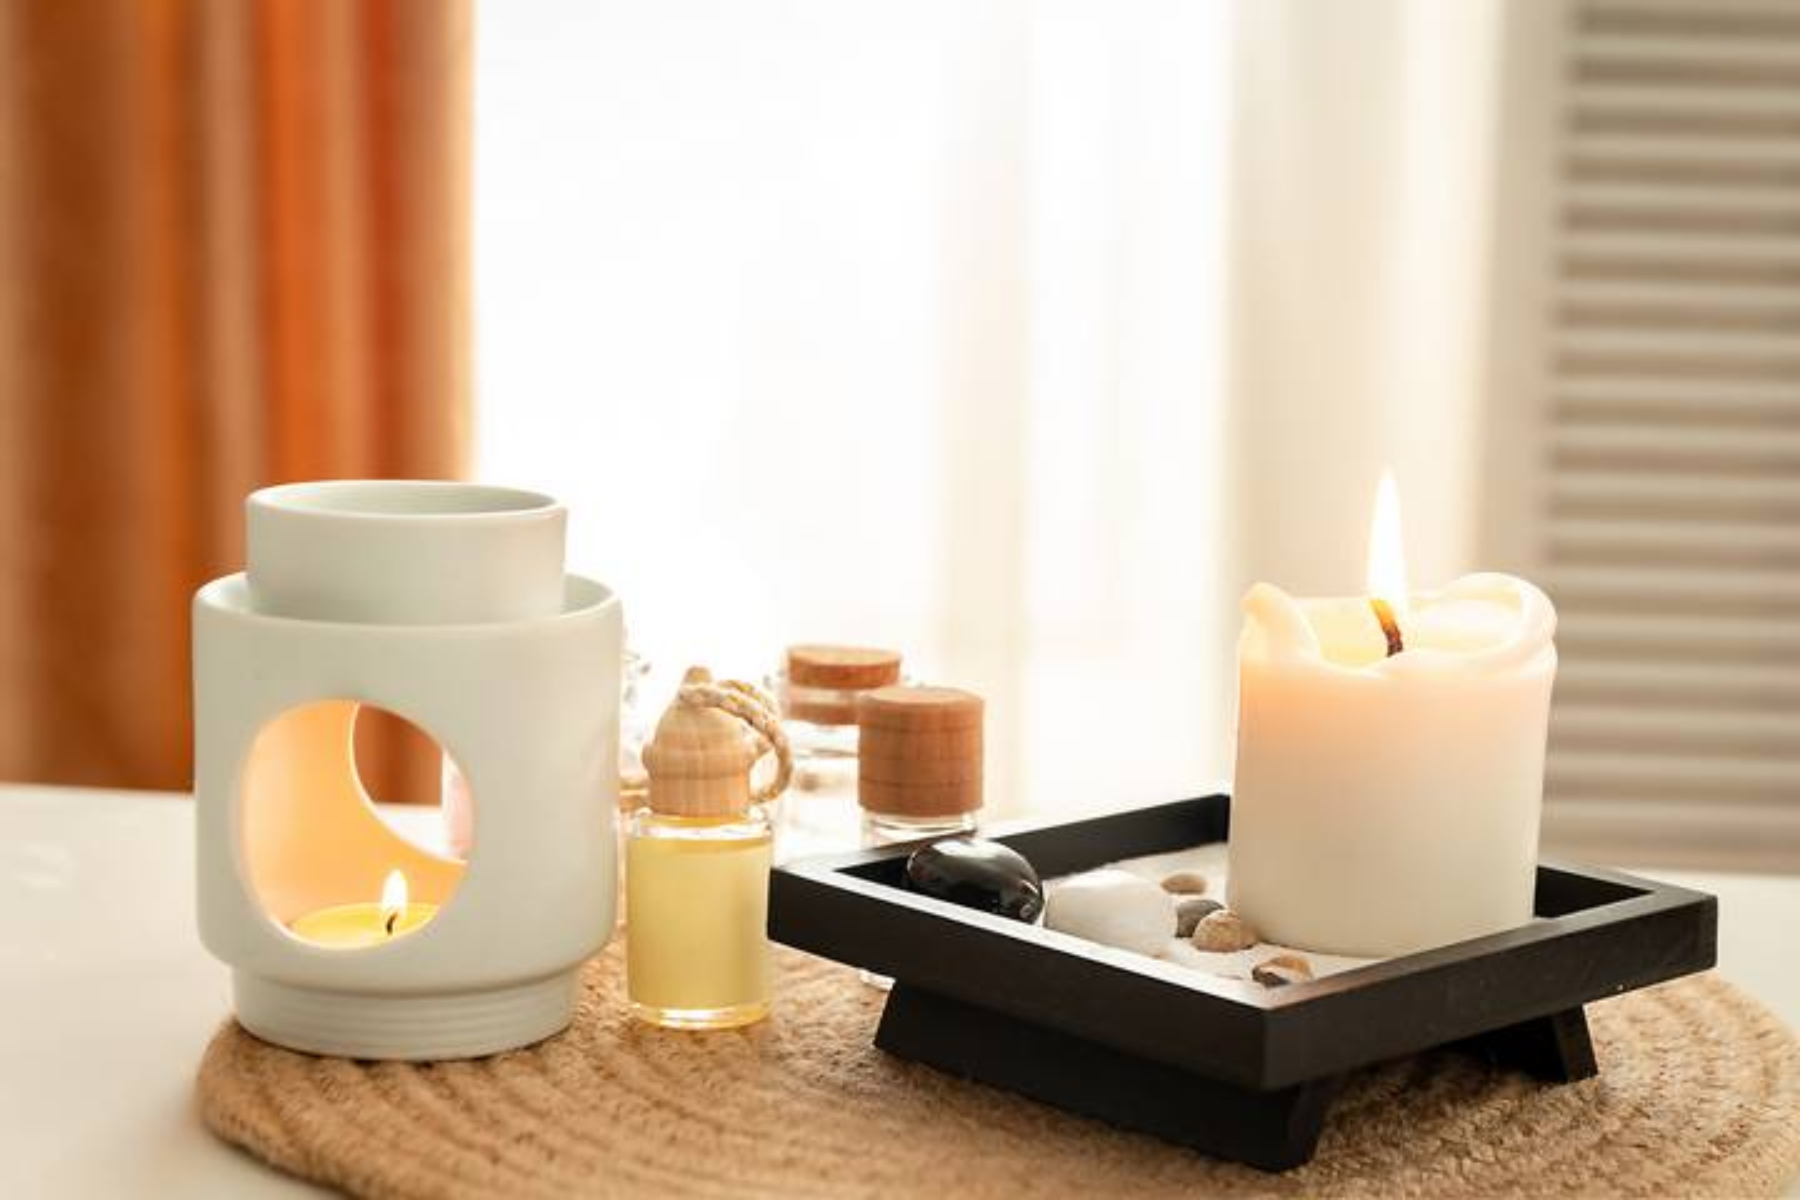 Αρωματικά κεριά: Πώς μπορούν να αποβούν επιβλαβή για την υγεία μας;